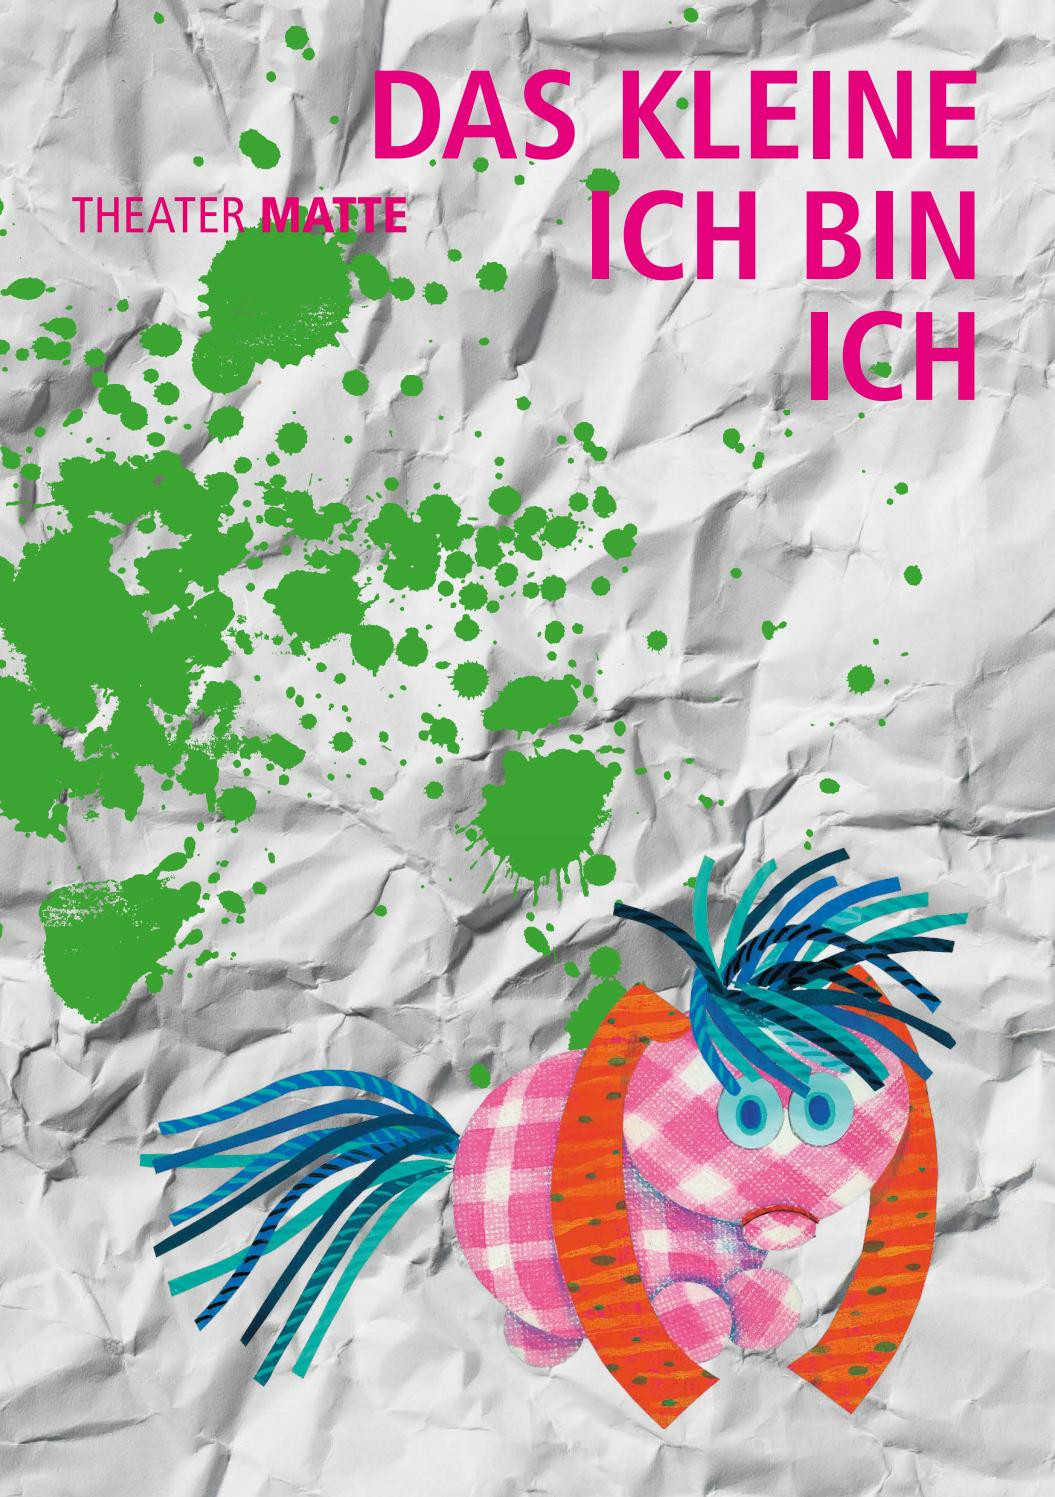 Das Kleine Ich Bin Ich-Freie Malvorlagen
 DAS KLEINE ICH BIN ICH – Flyer A5 Theater Matte Bern by